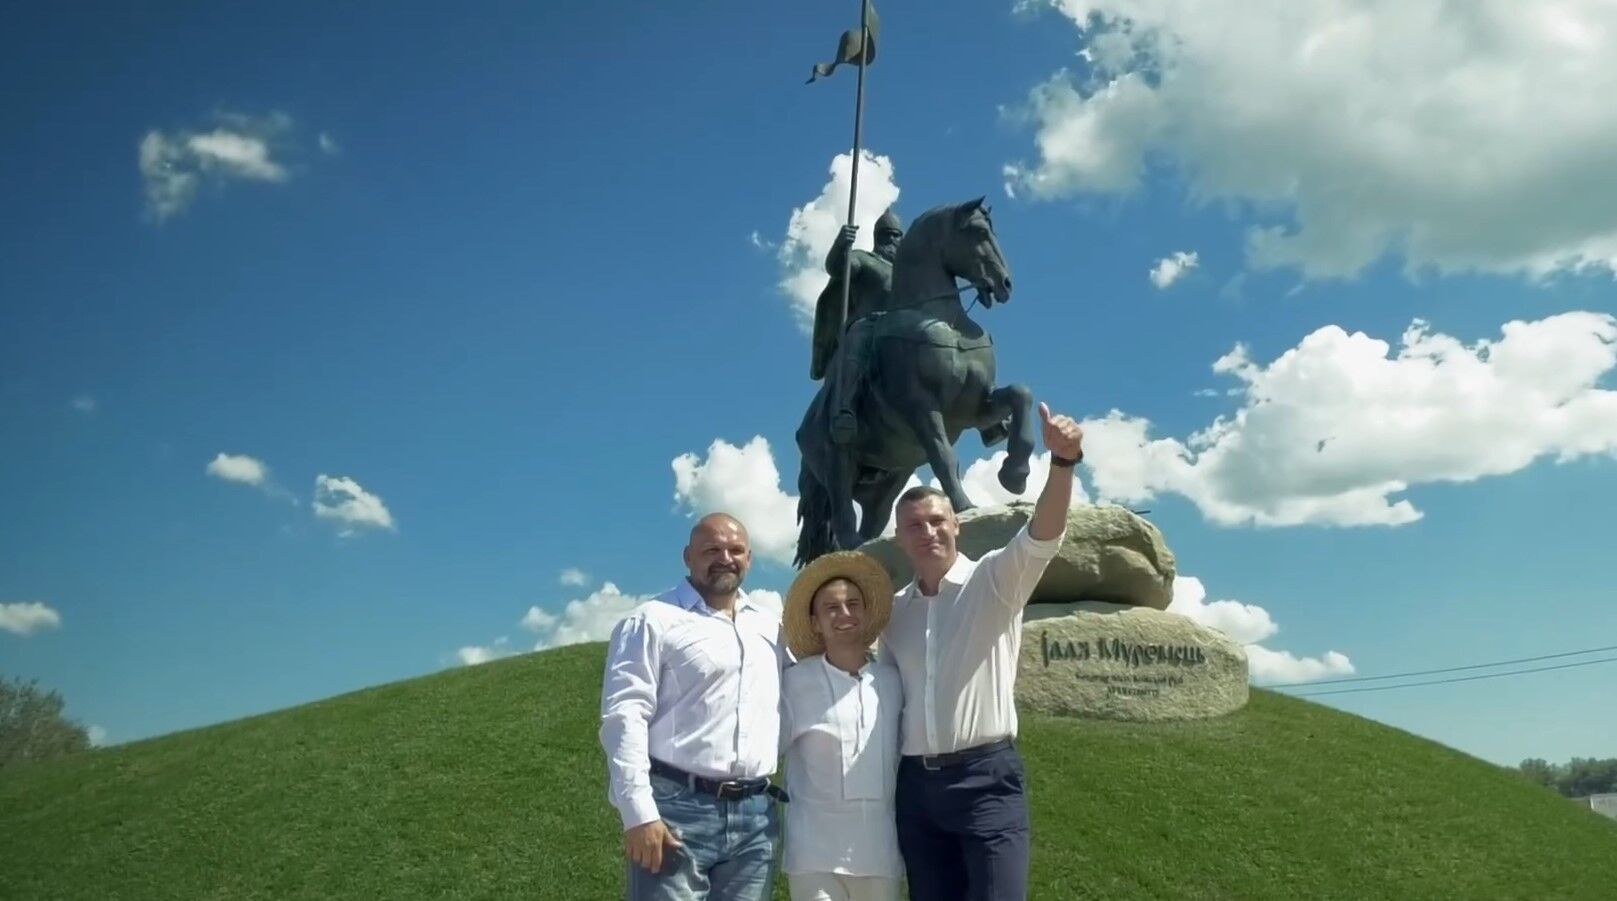 "Ми памʼятаємо нашу історію": Кличко привітав киян із Днем міста та показав трансформацію столиці. Відео